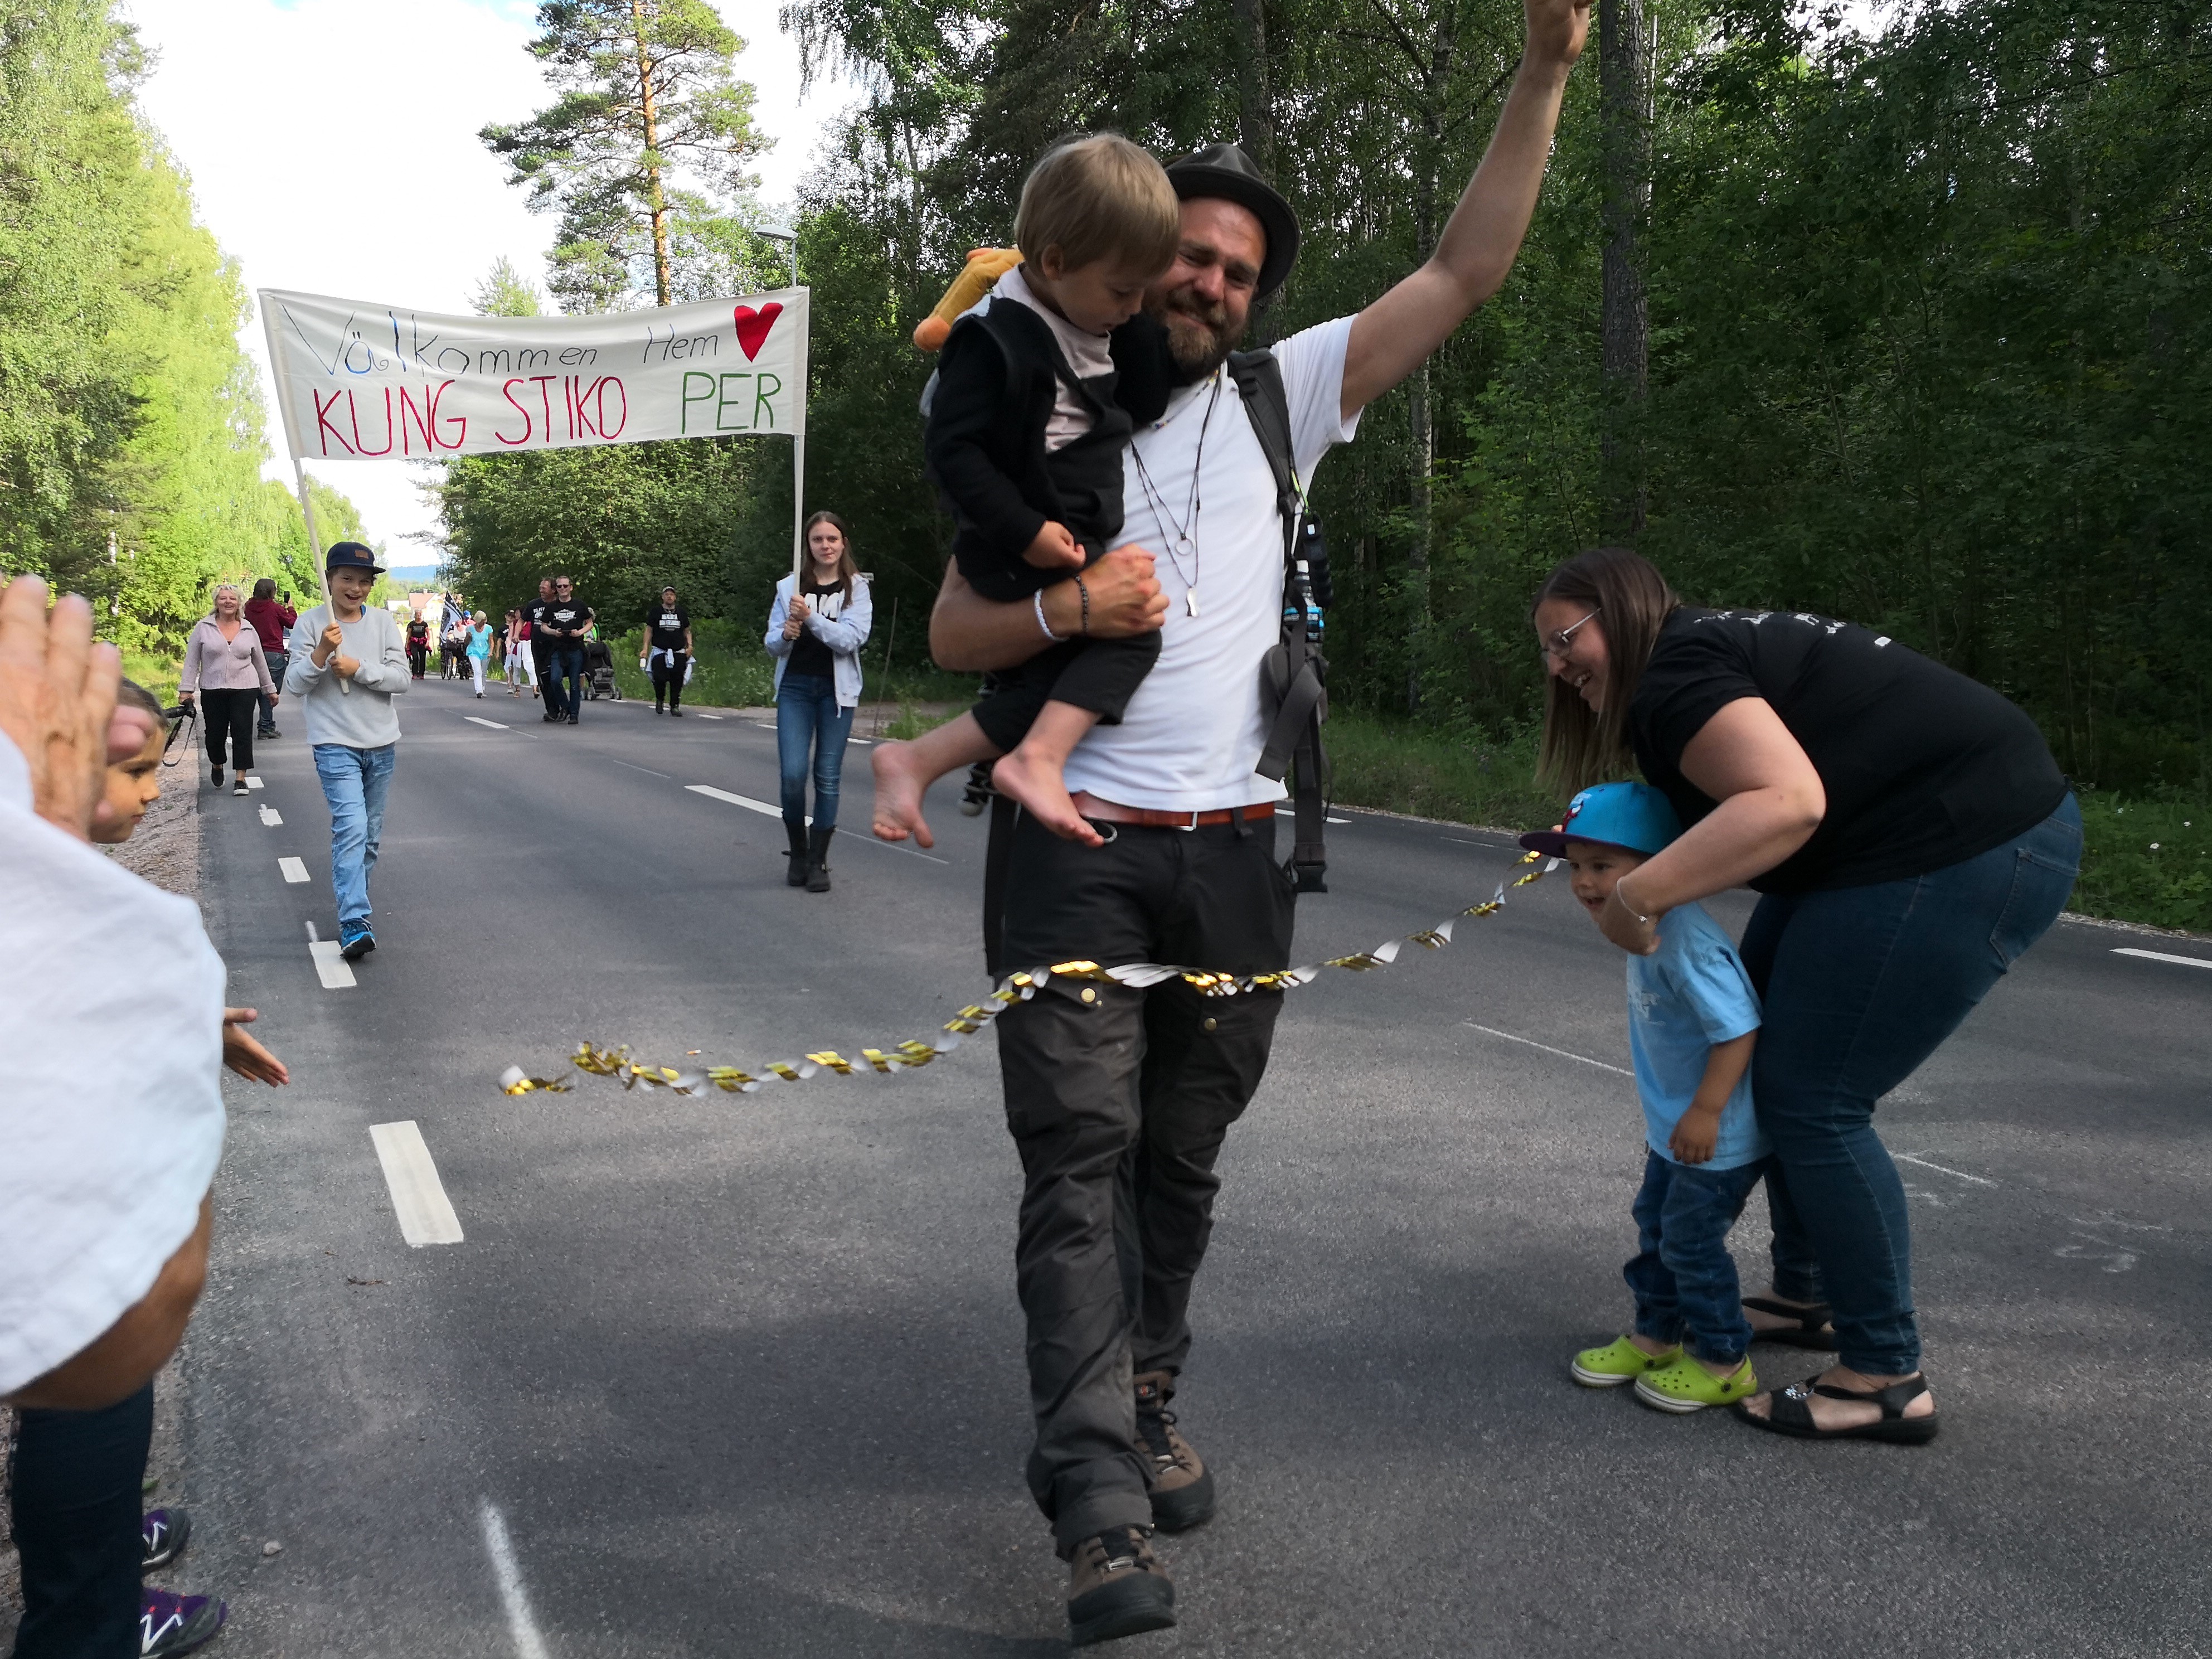 Stiko Per är framme i Leksand efter 80 mil till fots och över en miljon kronor till Barncancerfonden. Foto: Lina Rörvall.